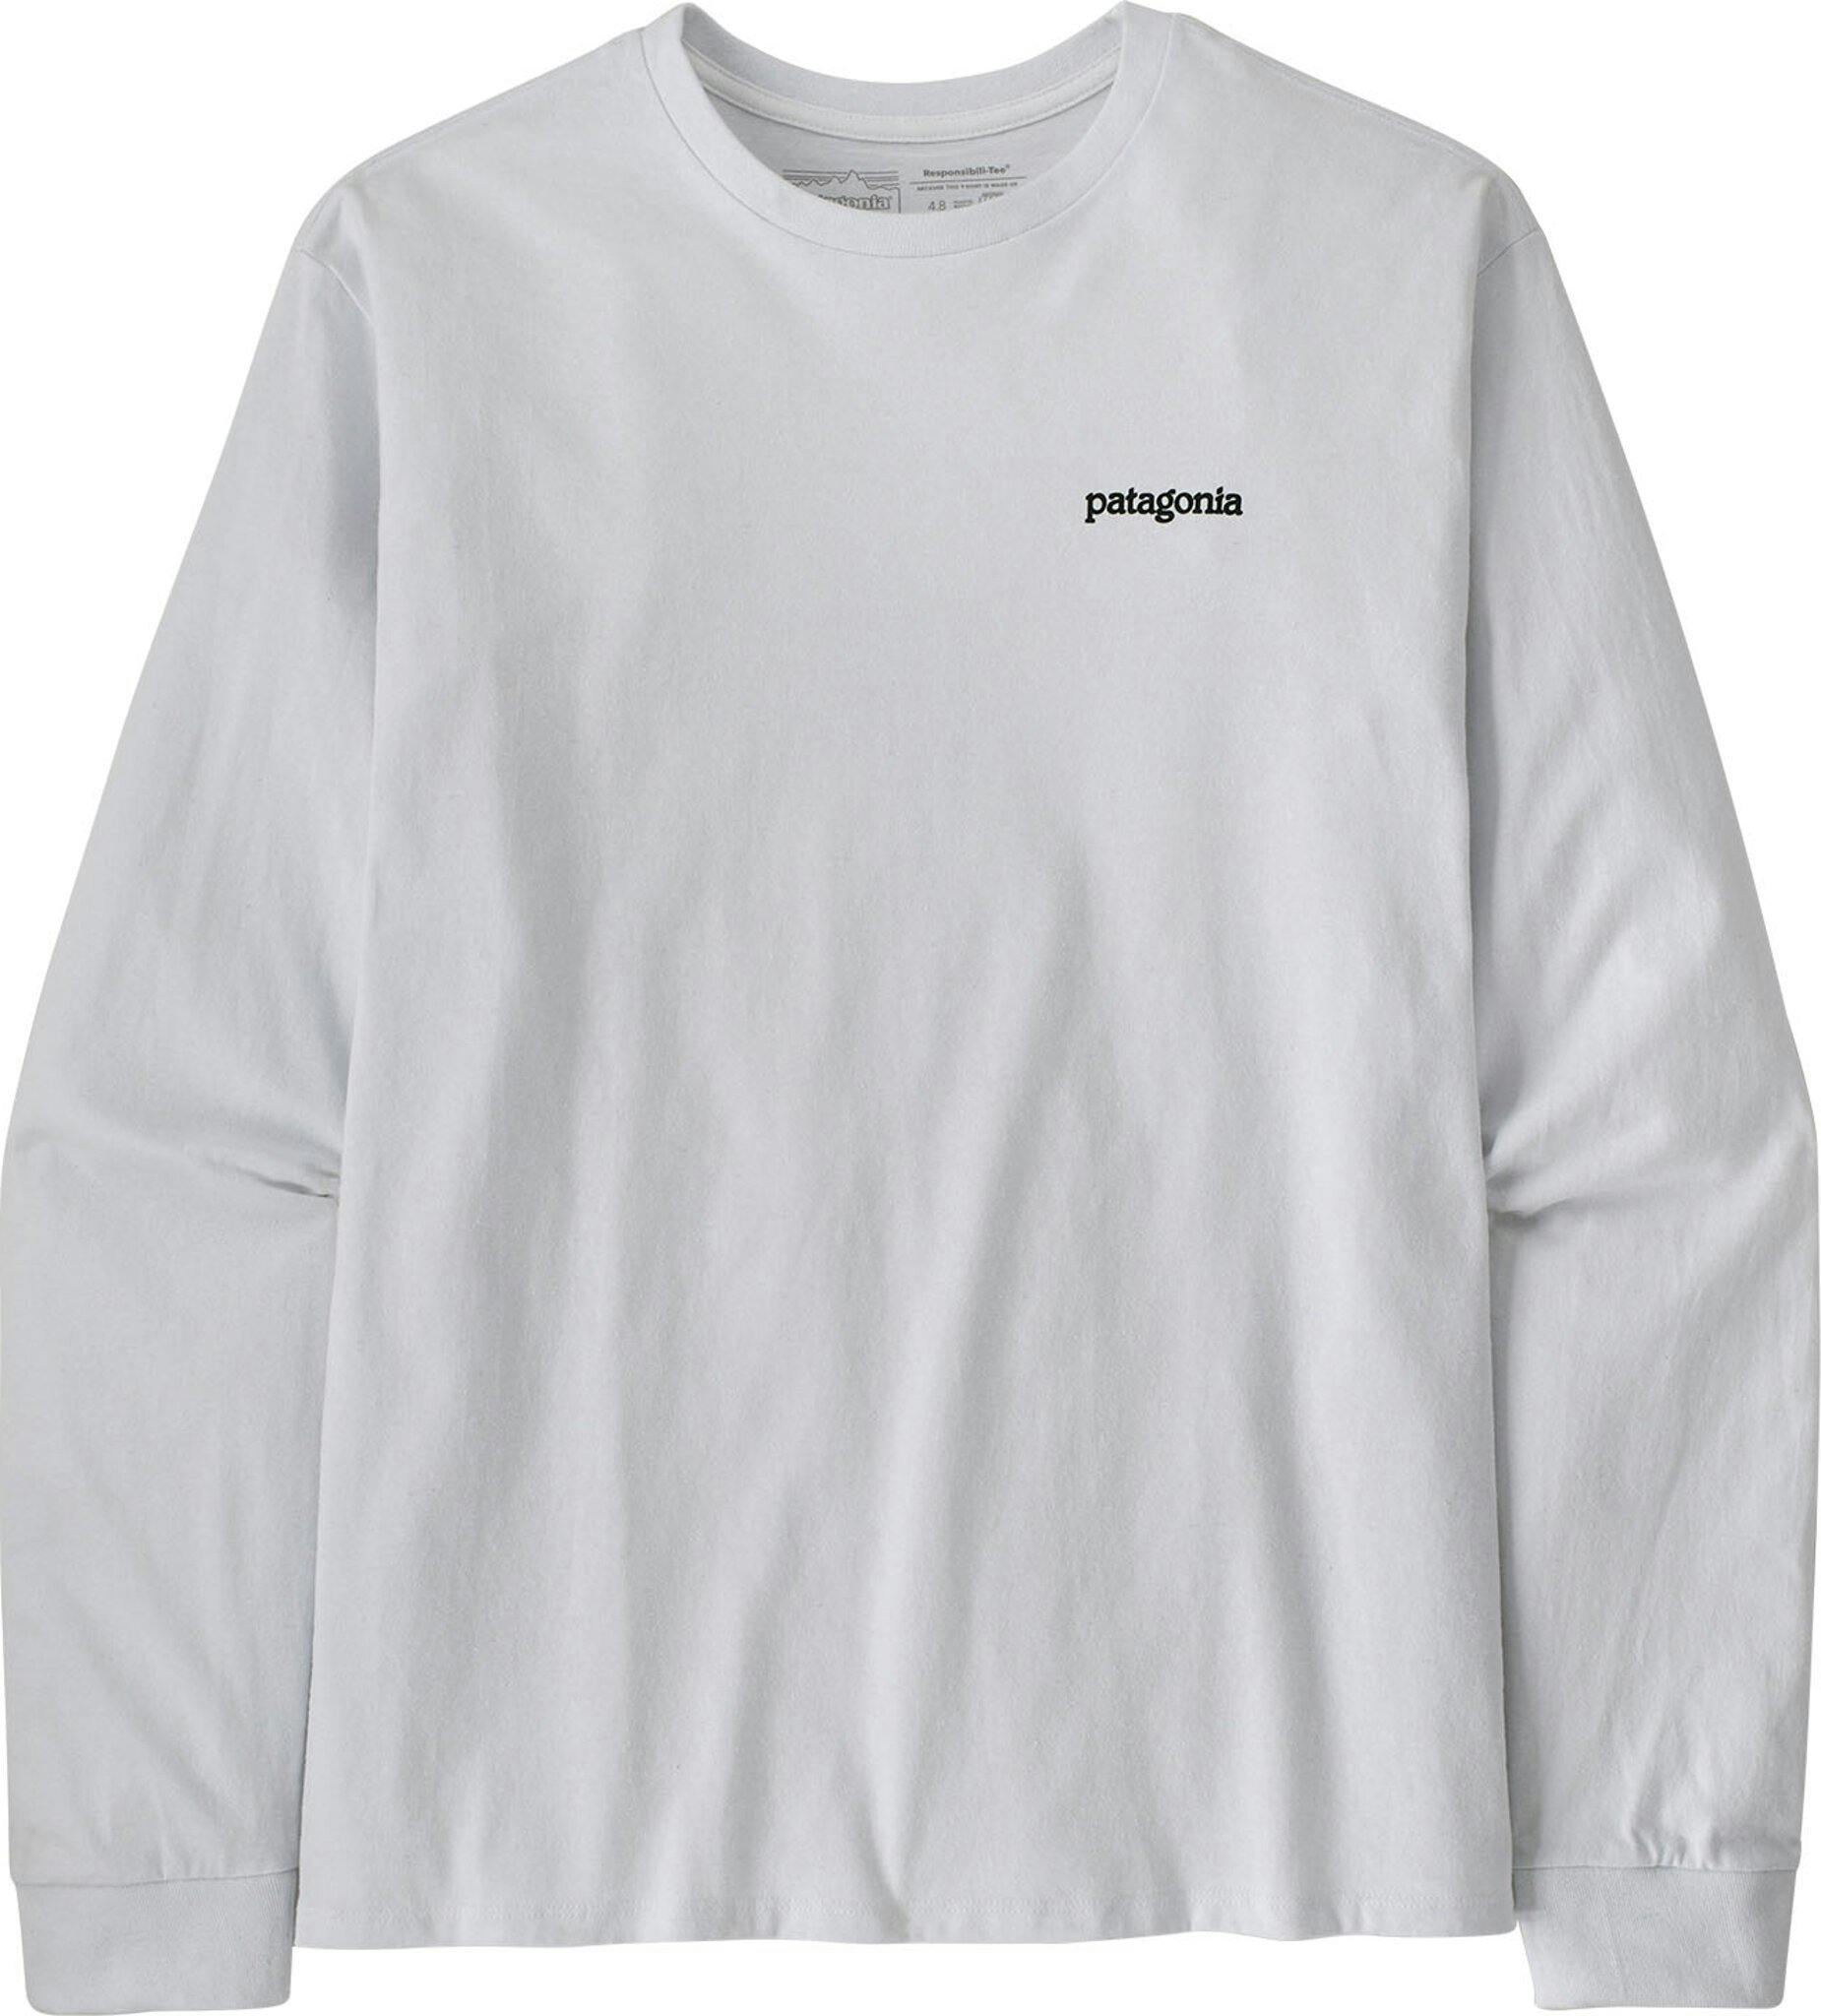 Numéro de l'image de la galerie de produits 1 pour le produit T-shirt à manches longues Fitz Roy Horizons Responsibili-Tee - Homme